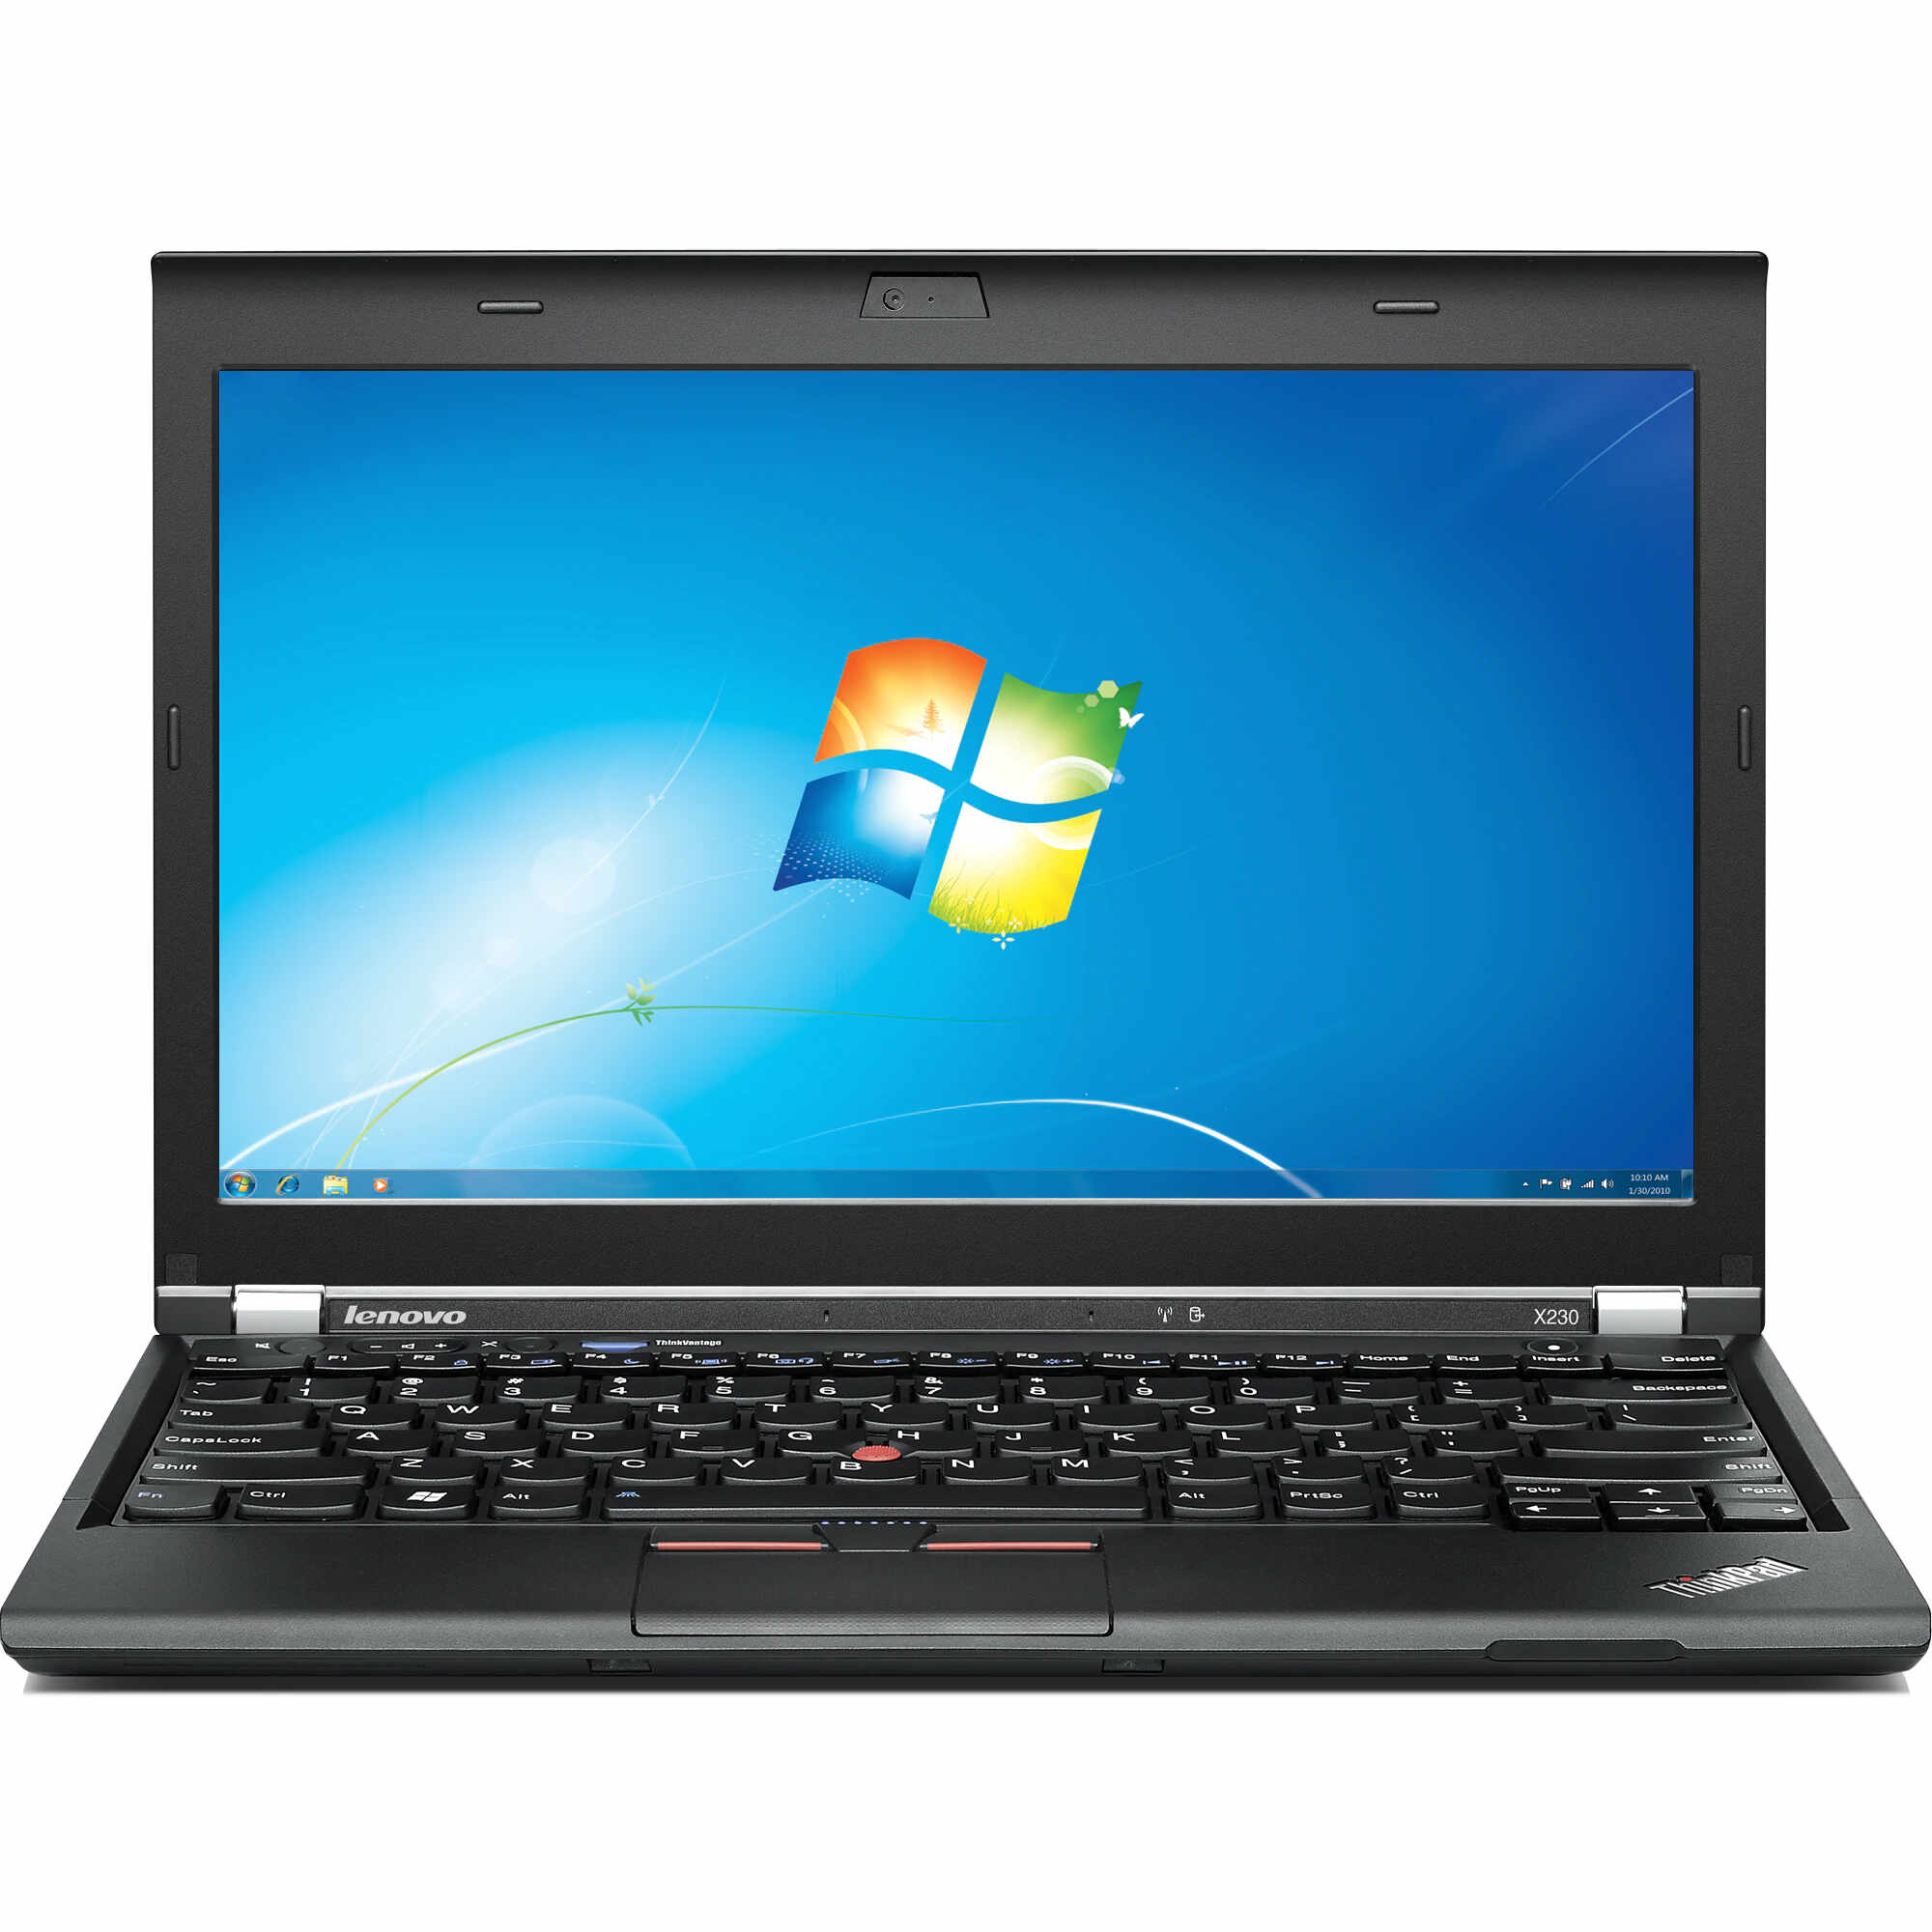 Laptop LENOVO Thinkpad x230, Intel Core i7-3520M 2.90GHz, 4GB DDR3, 120GB SSD, Fara Webcam, 12.5 Inch